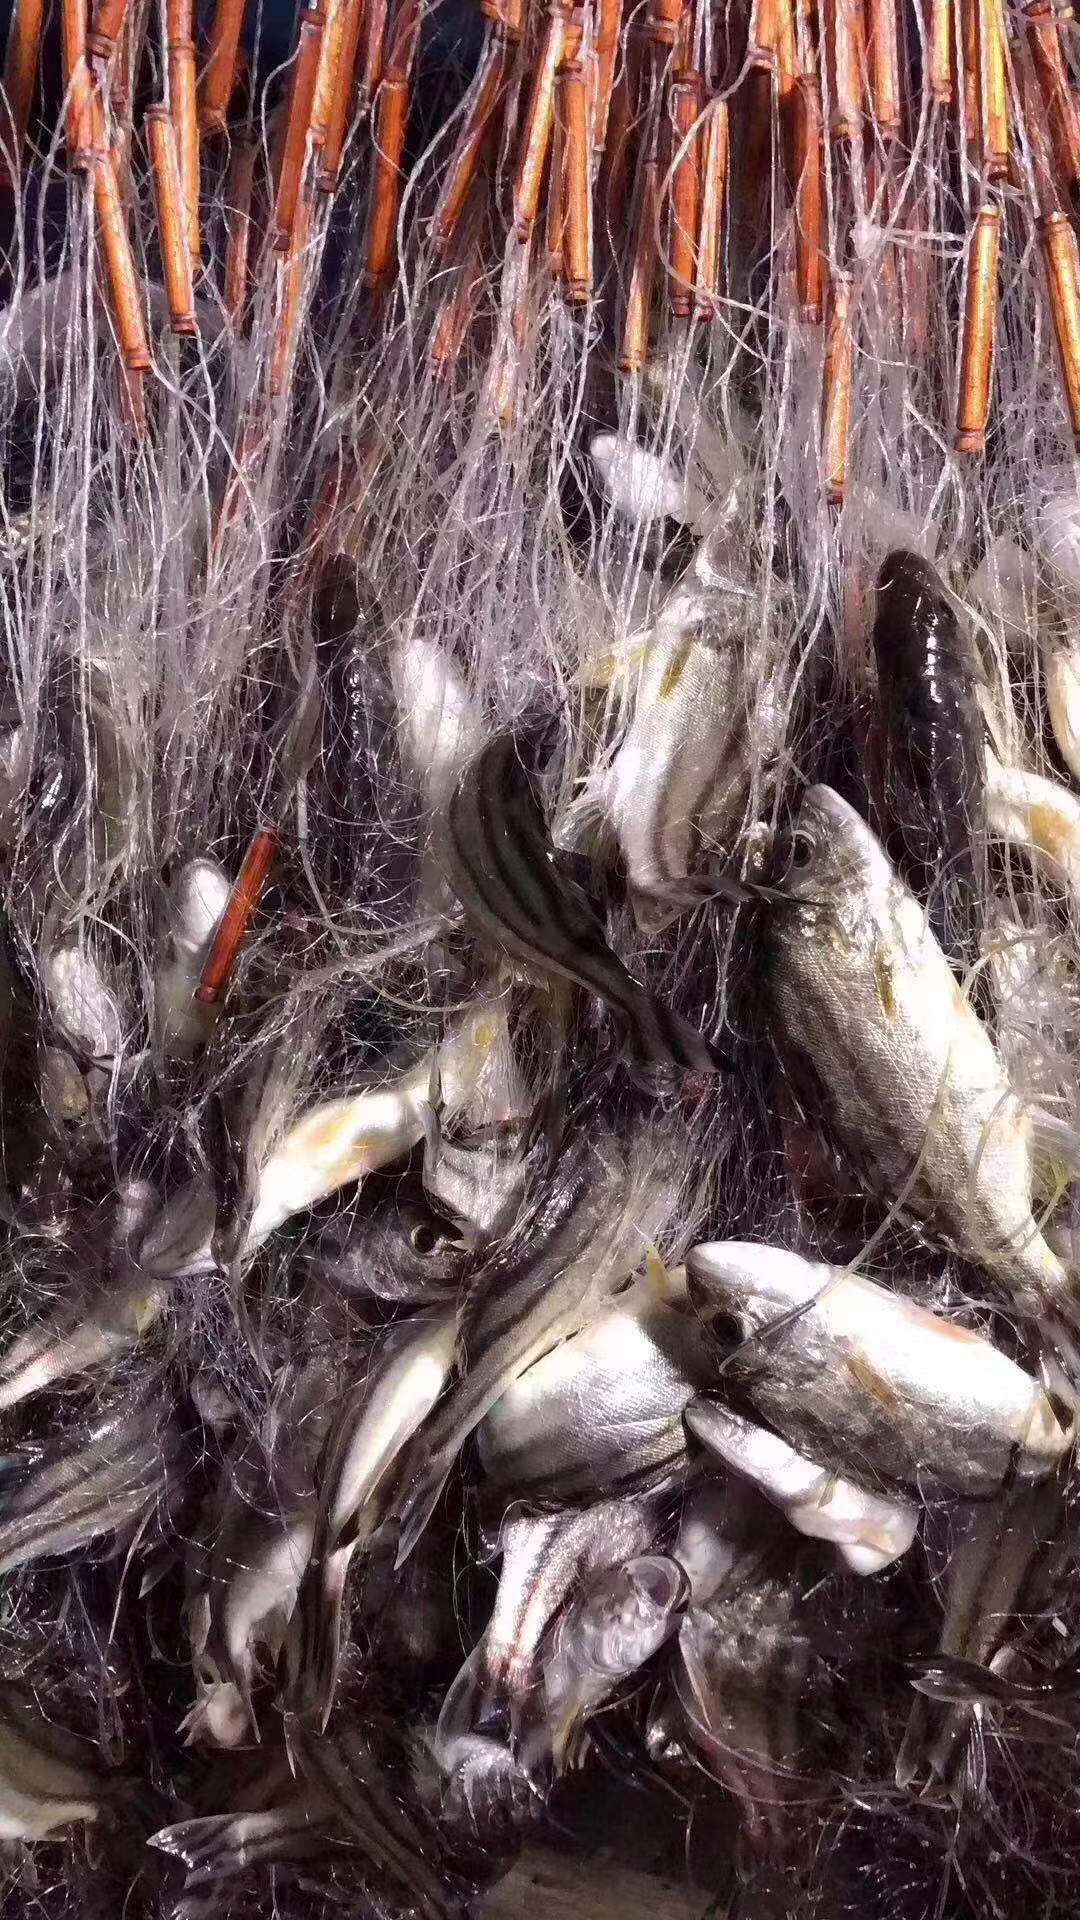 【野生三线鱼】也叫斑猪鱼,是潮汕地区著名的好鱼,营养价值高,当天现